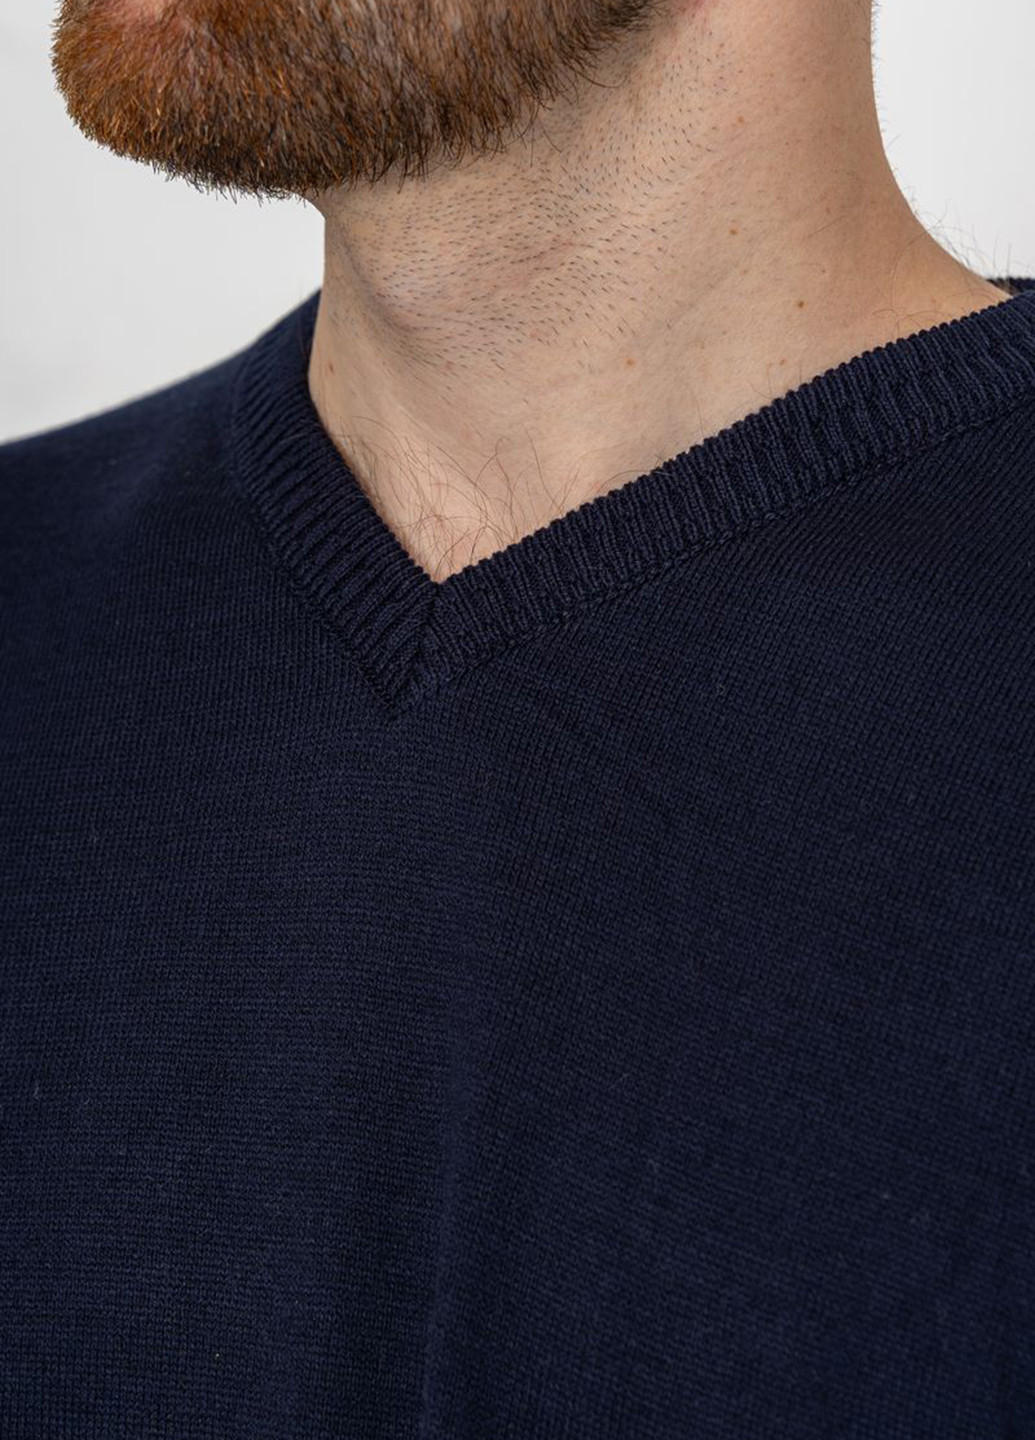 Темно-синій демісезонний пуловер пуловер Ager